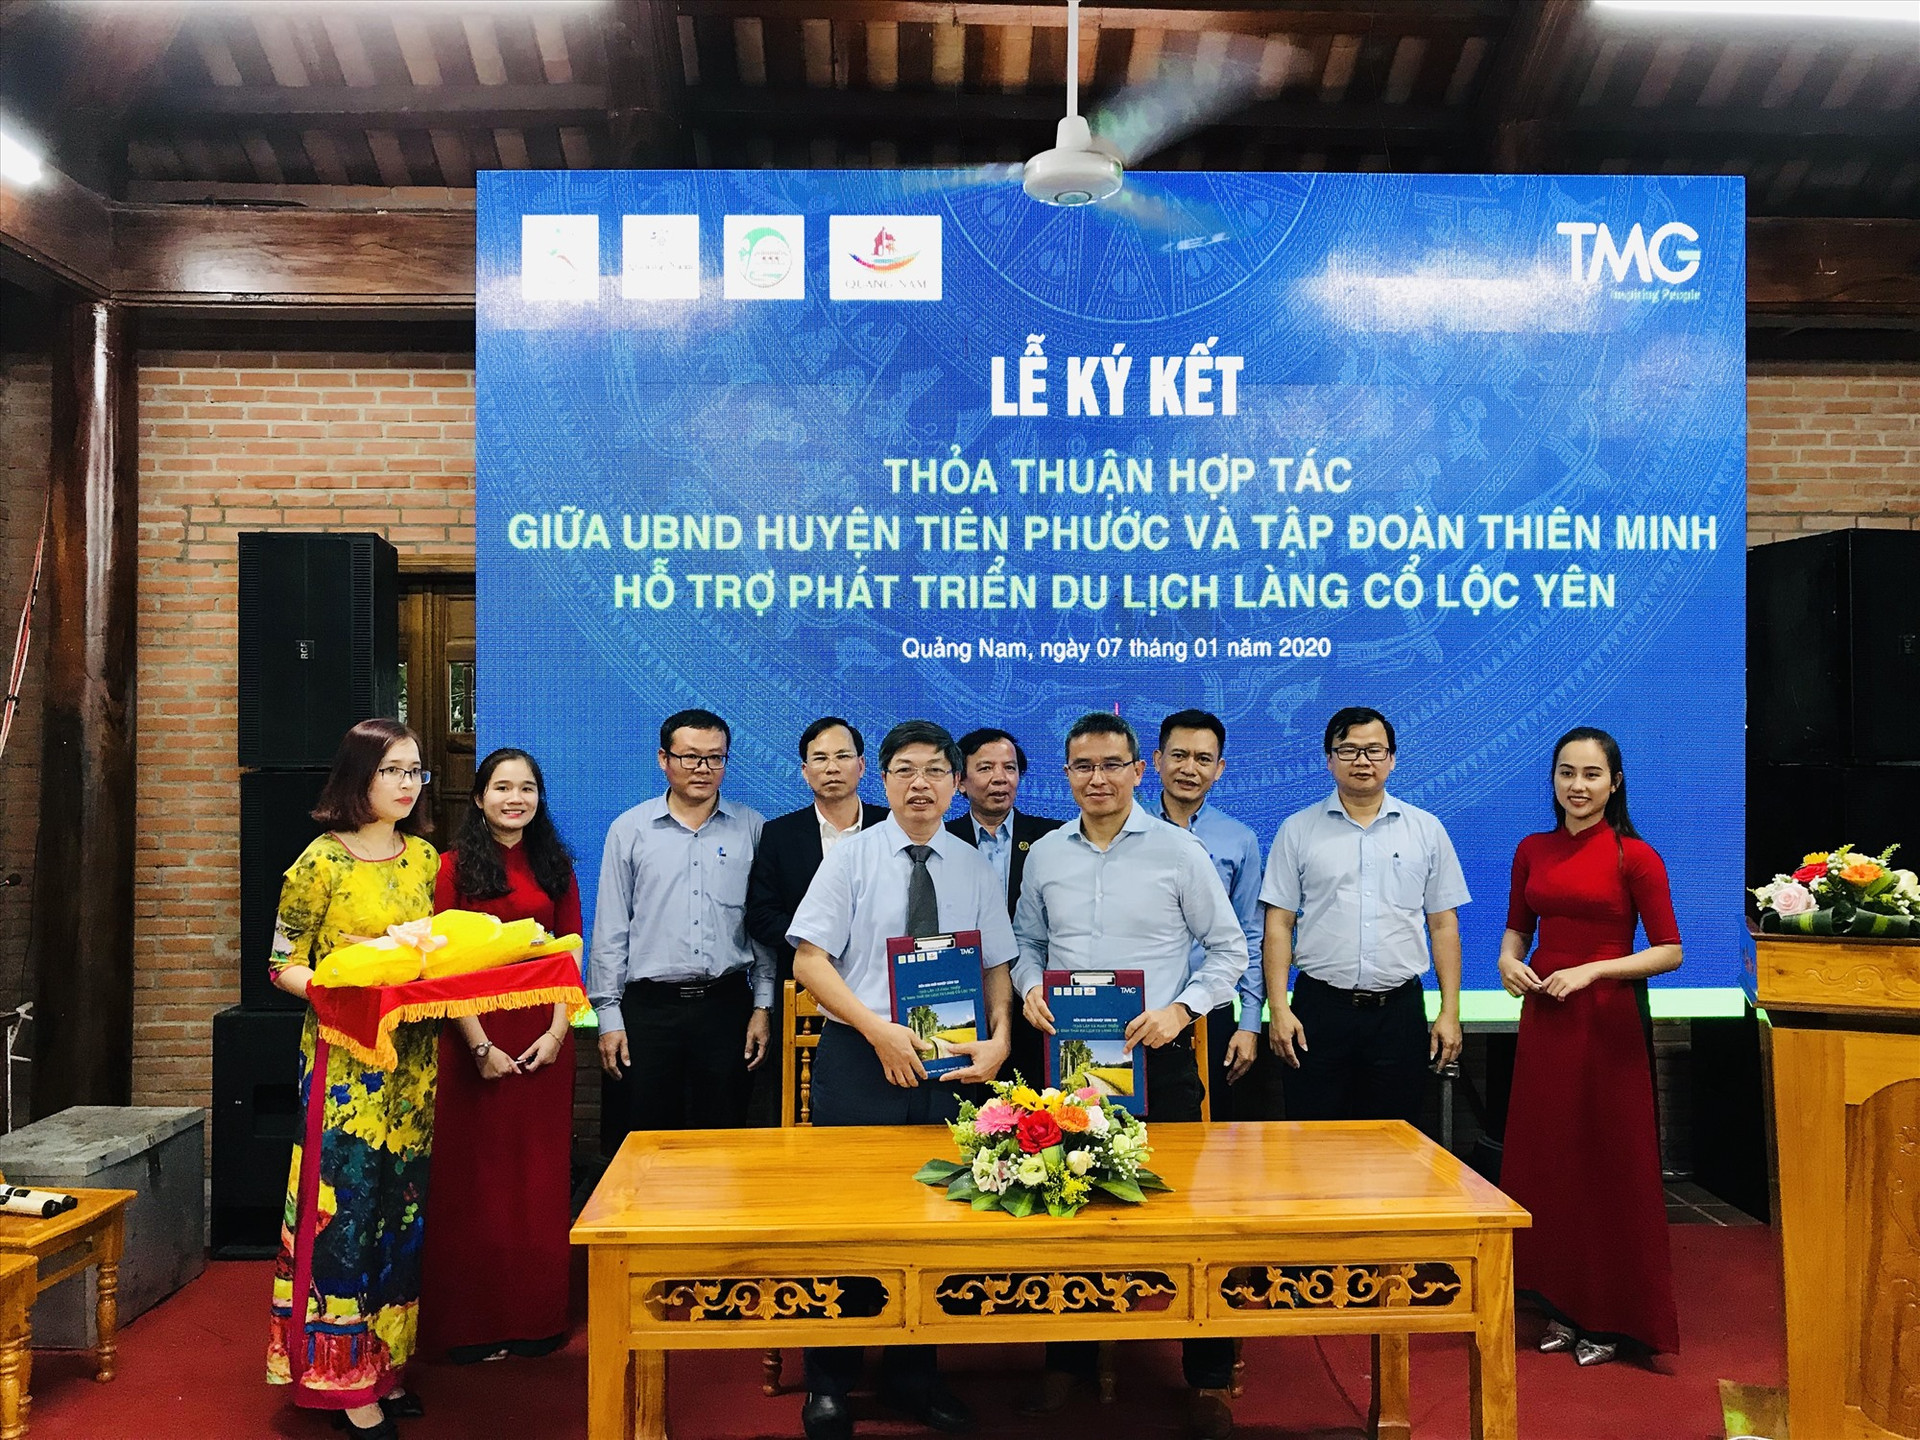 Ký kết hợp tác phát triển du lịch giữa huyện Tiên Phước và tập đoàn Thiên Minh. Ảnh: L.T